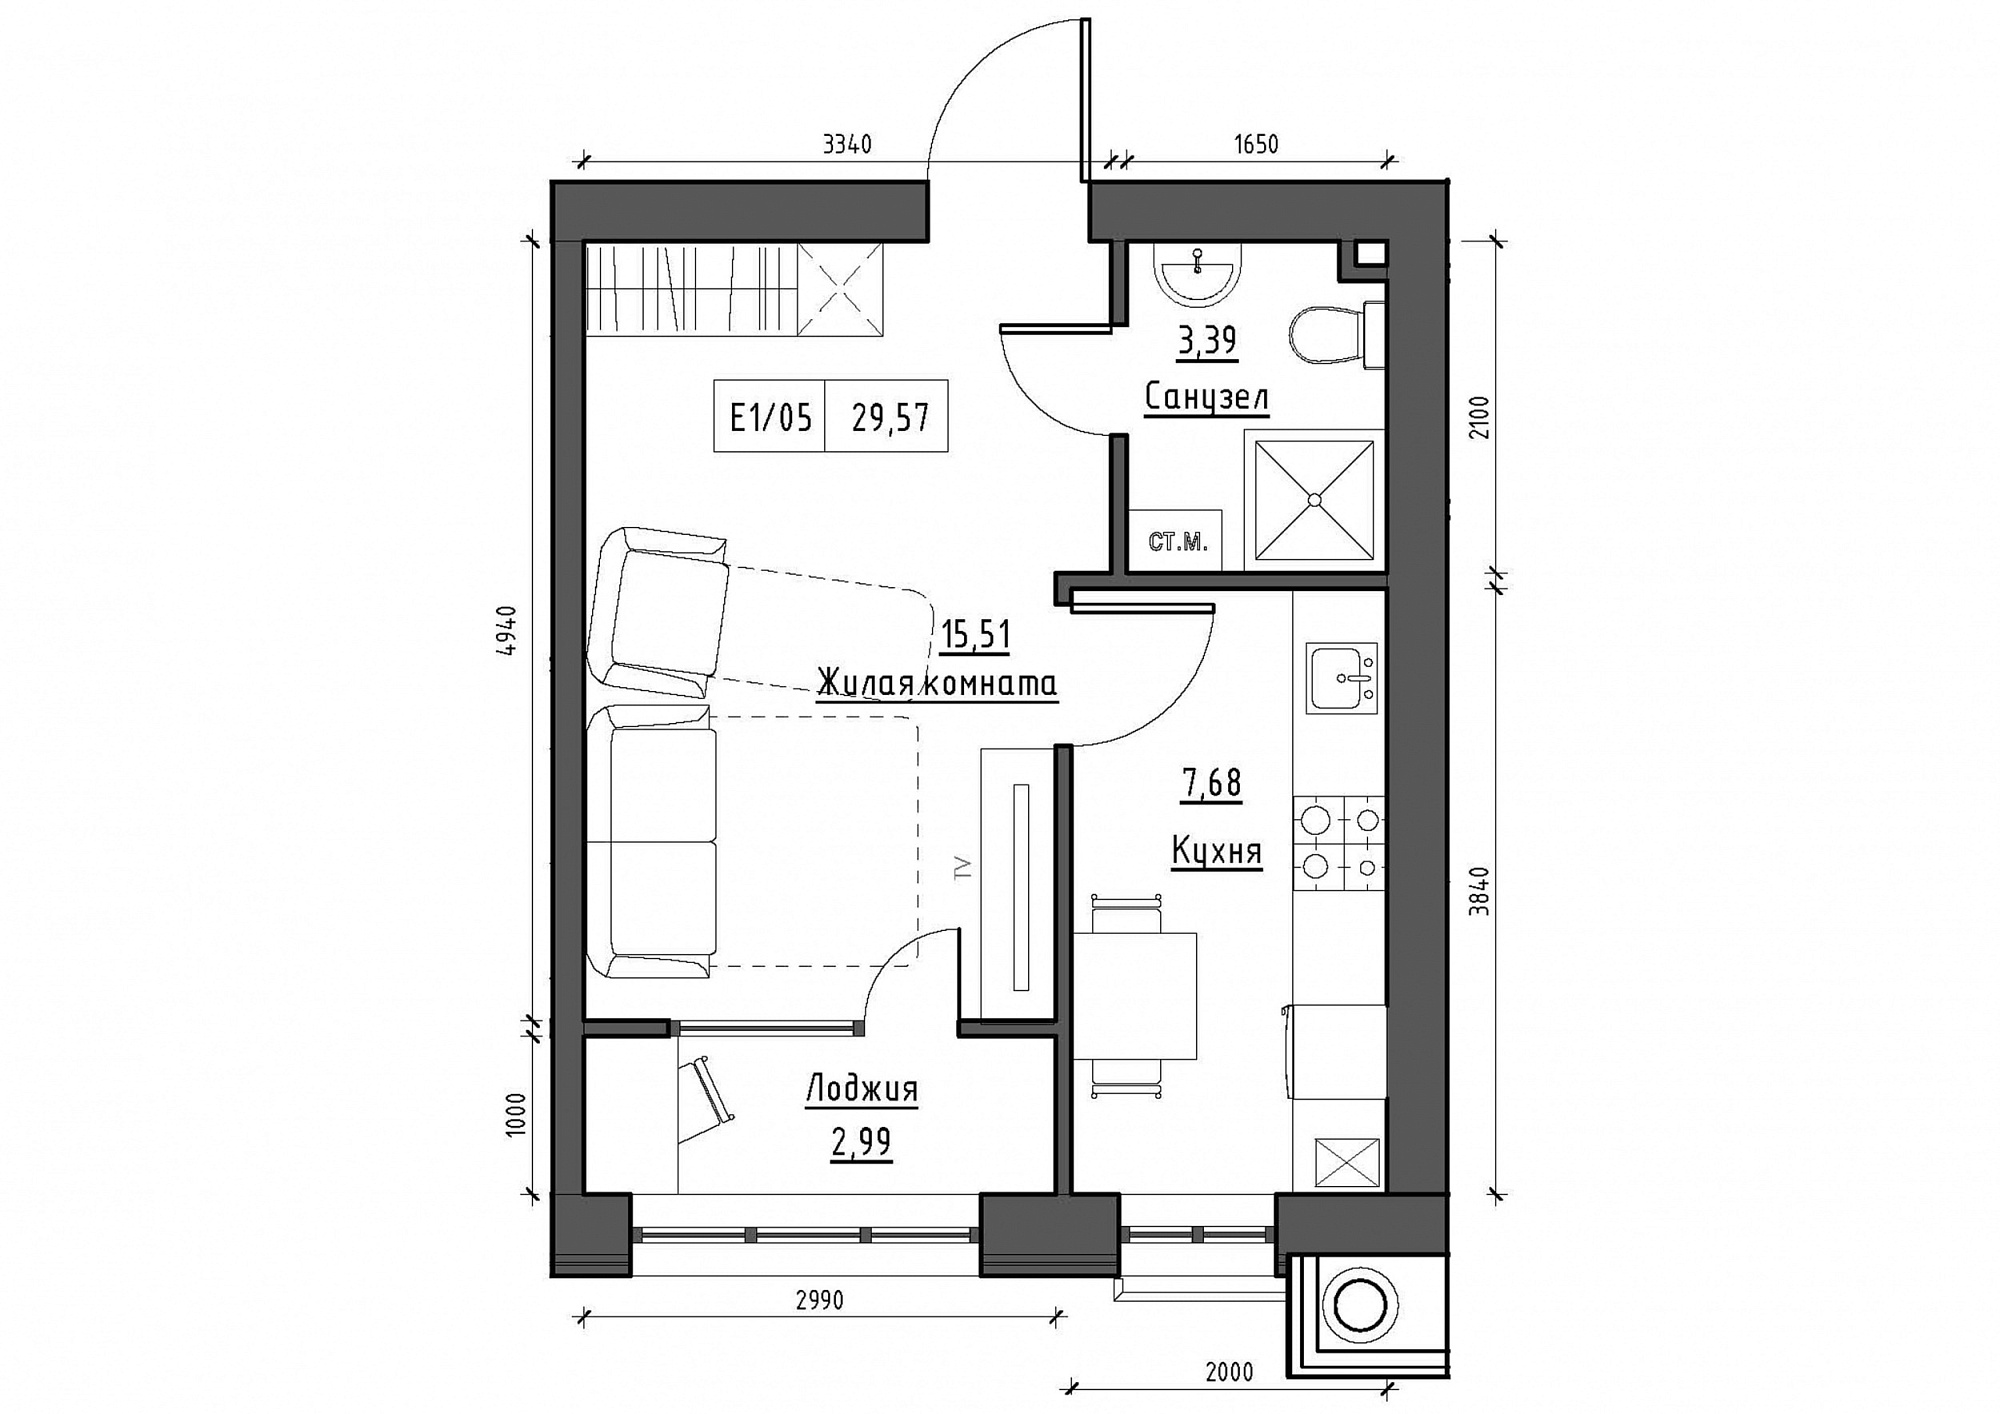 Планування 1-к квартира площею 29.57м2, KS-012-04/0006.